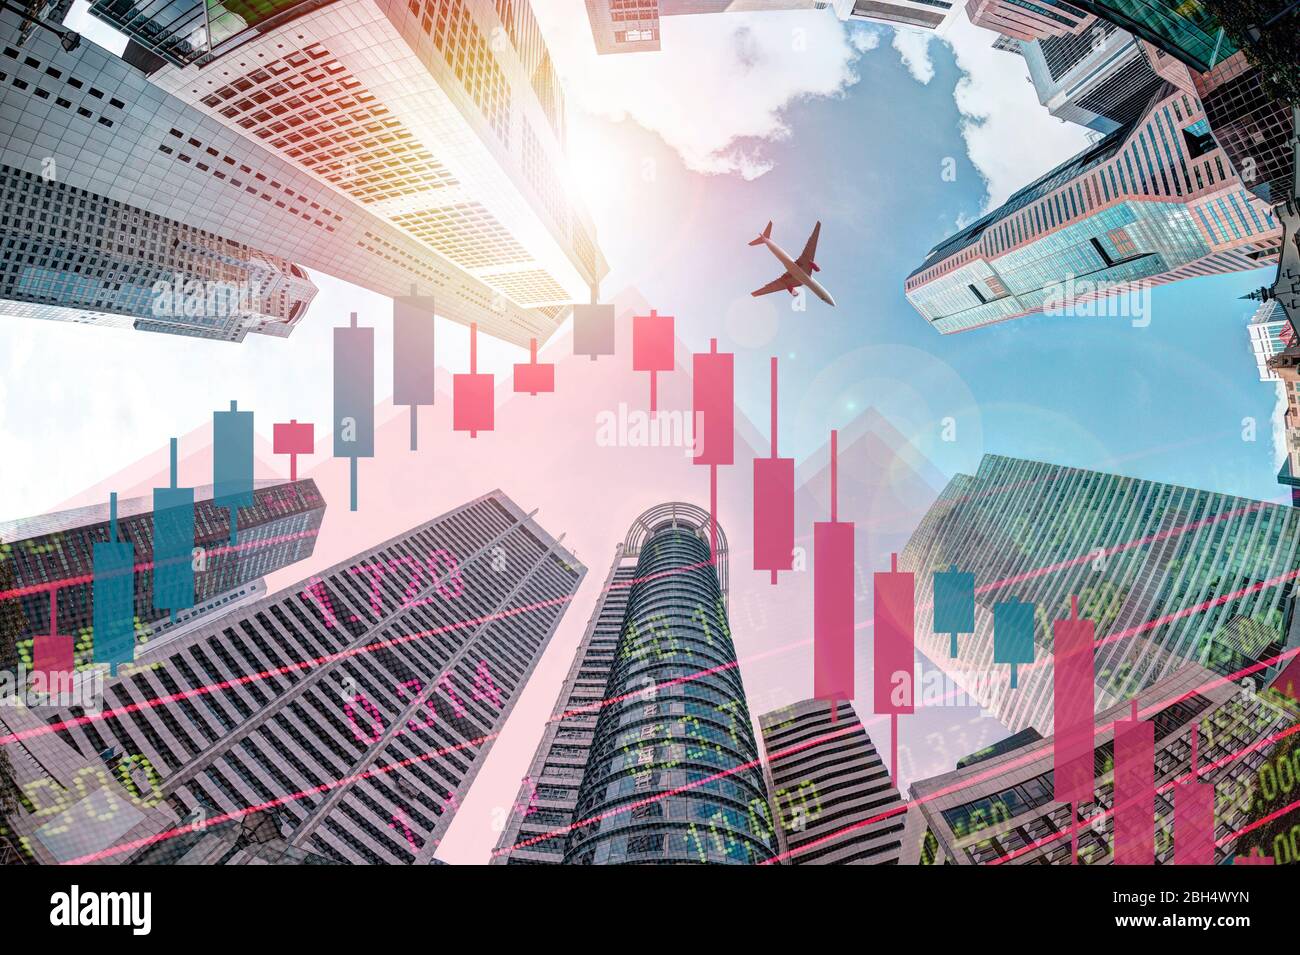 Concepto de recesión económica que muestra la caída de la carta de acciones y el avión volando sobre edificios modernos rascacielos de negocios en el distrito financiero de Singapur. Foto de stock